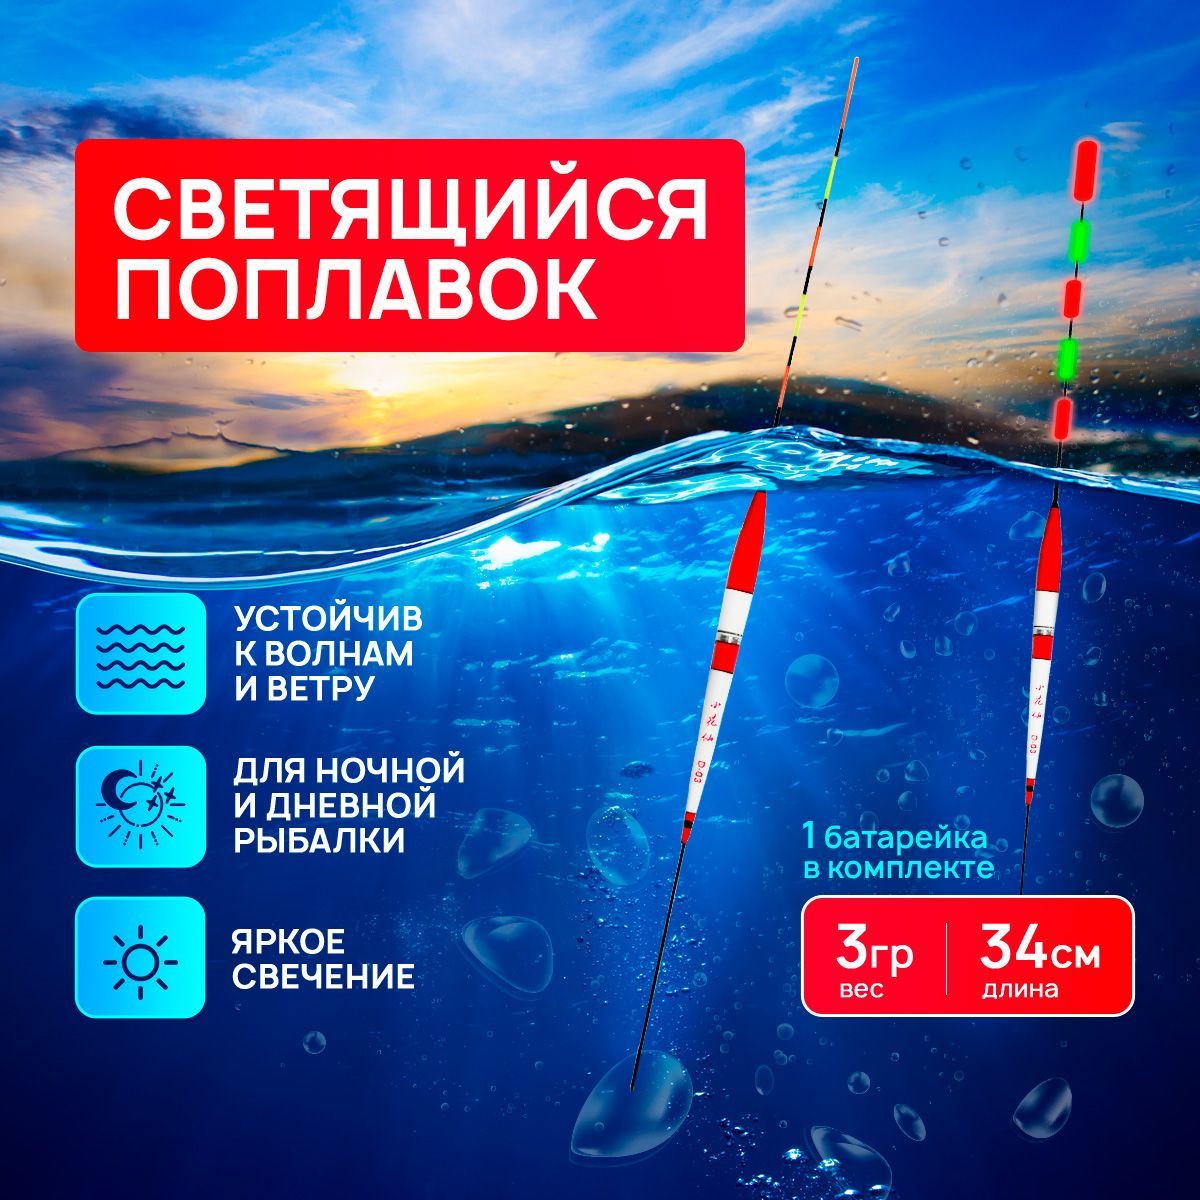 Светящийся поплавок для ночной рыбалки в Москве - где и как выбрать лучший?